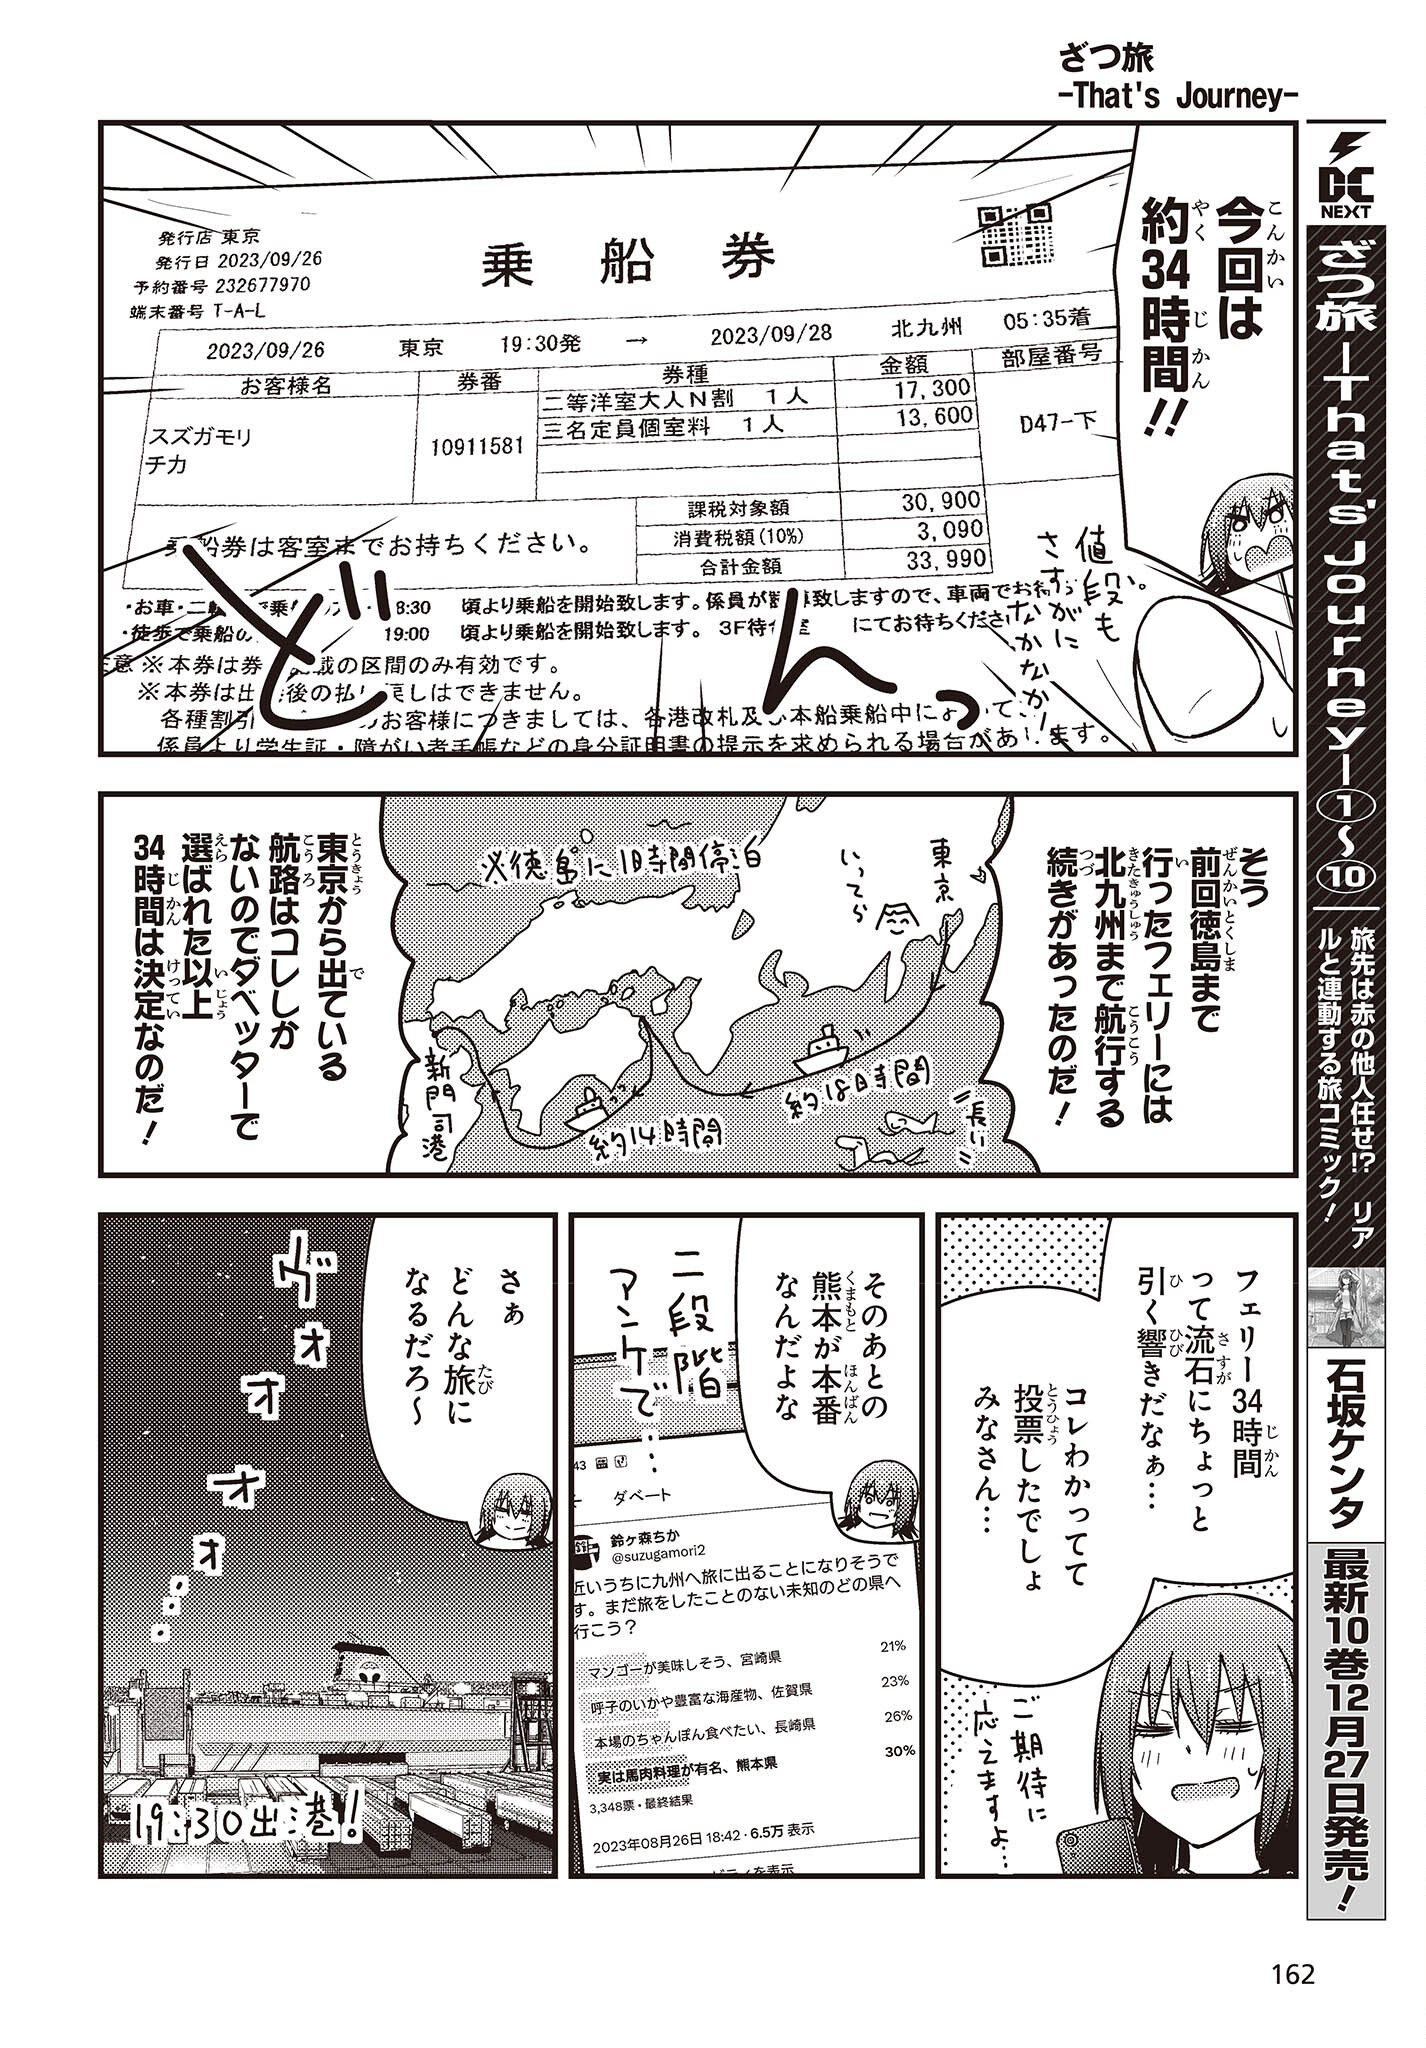 ざつ旅-That’s Journey- 第34話 - Page 2